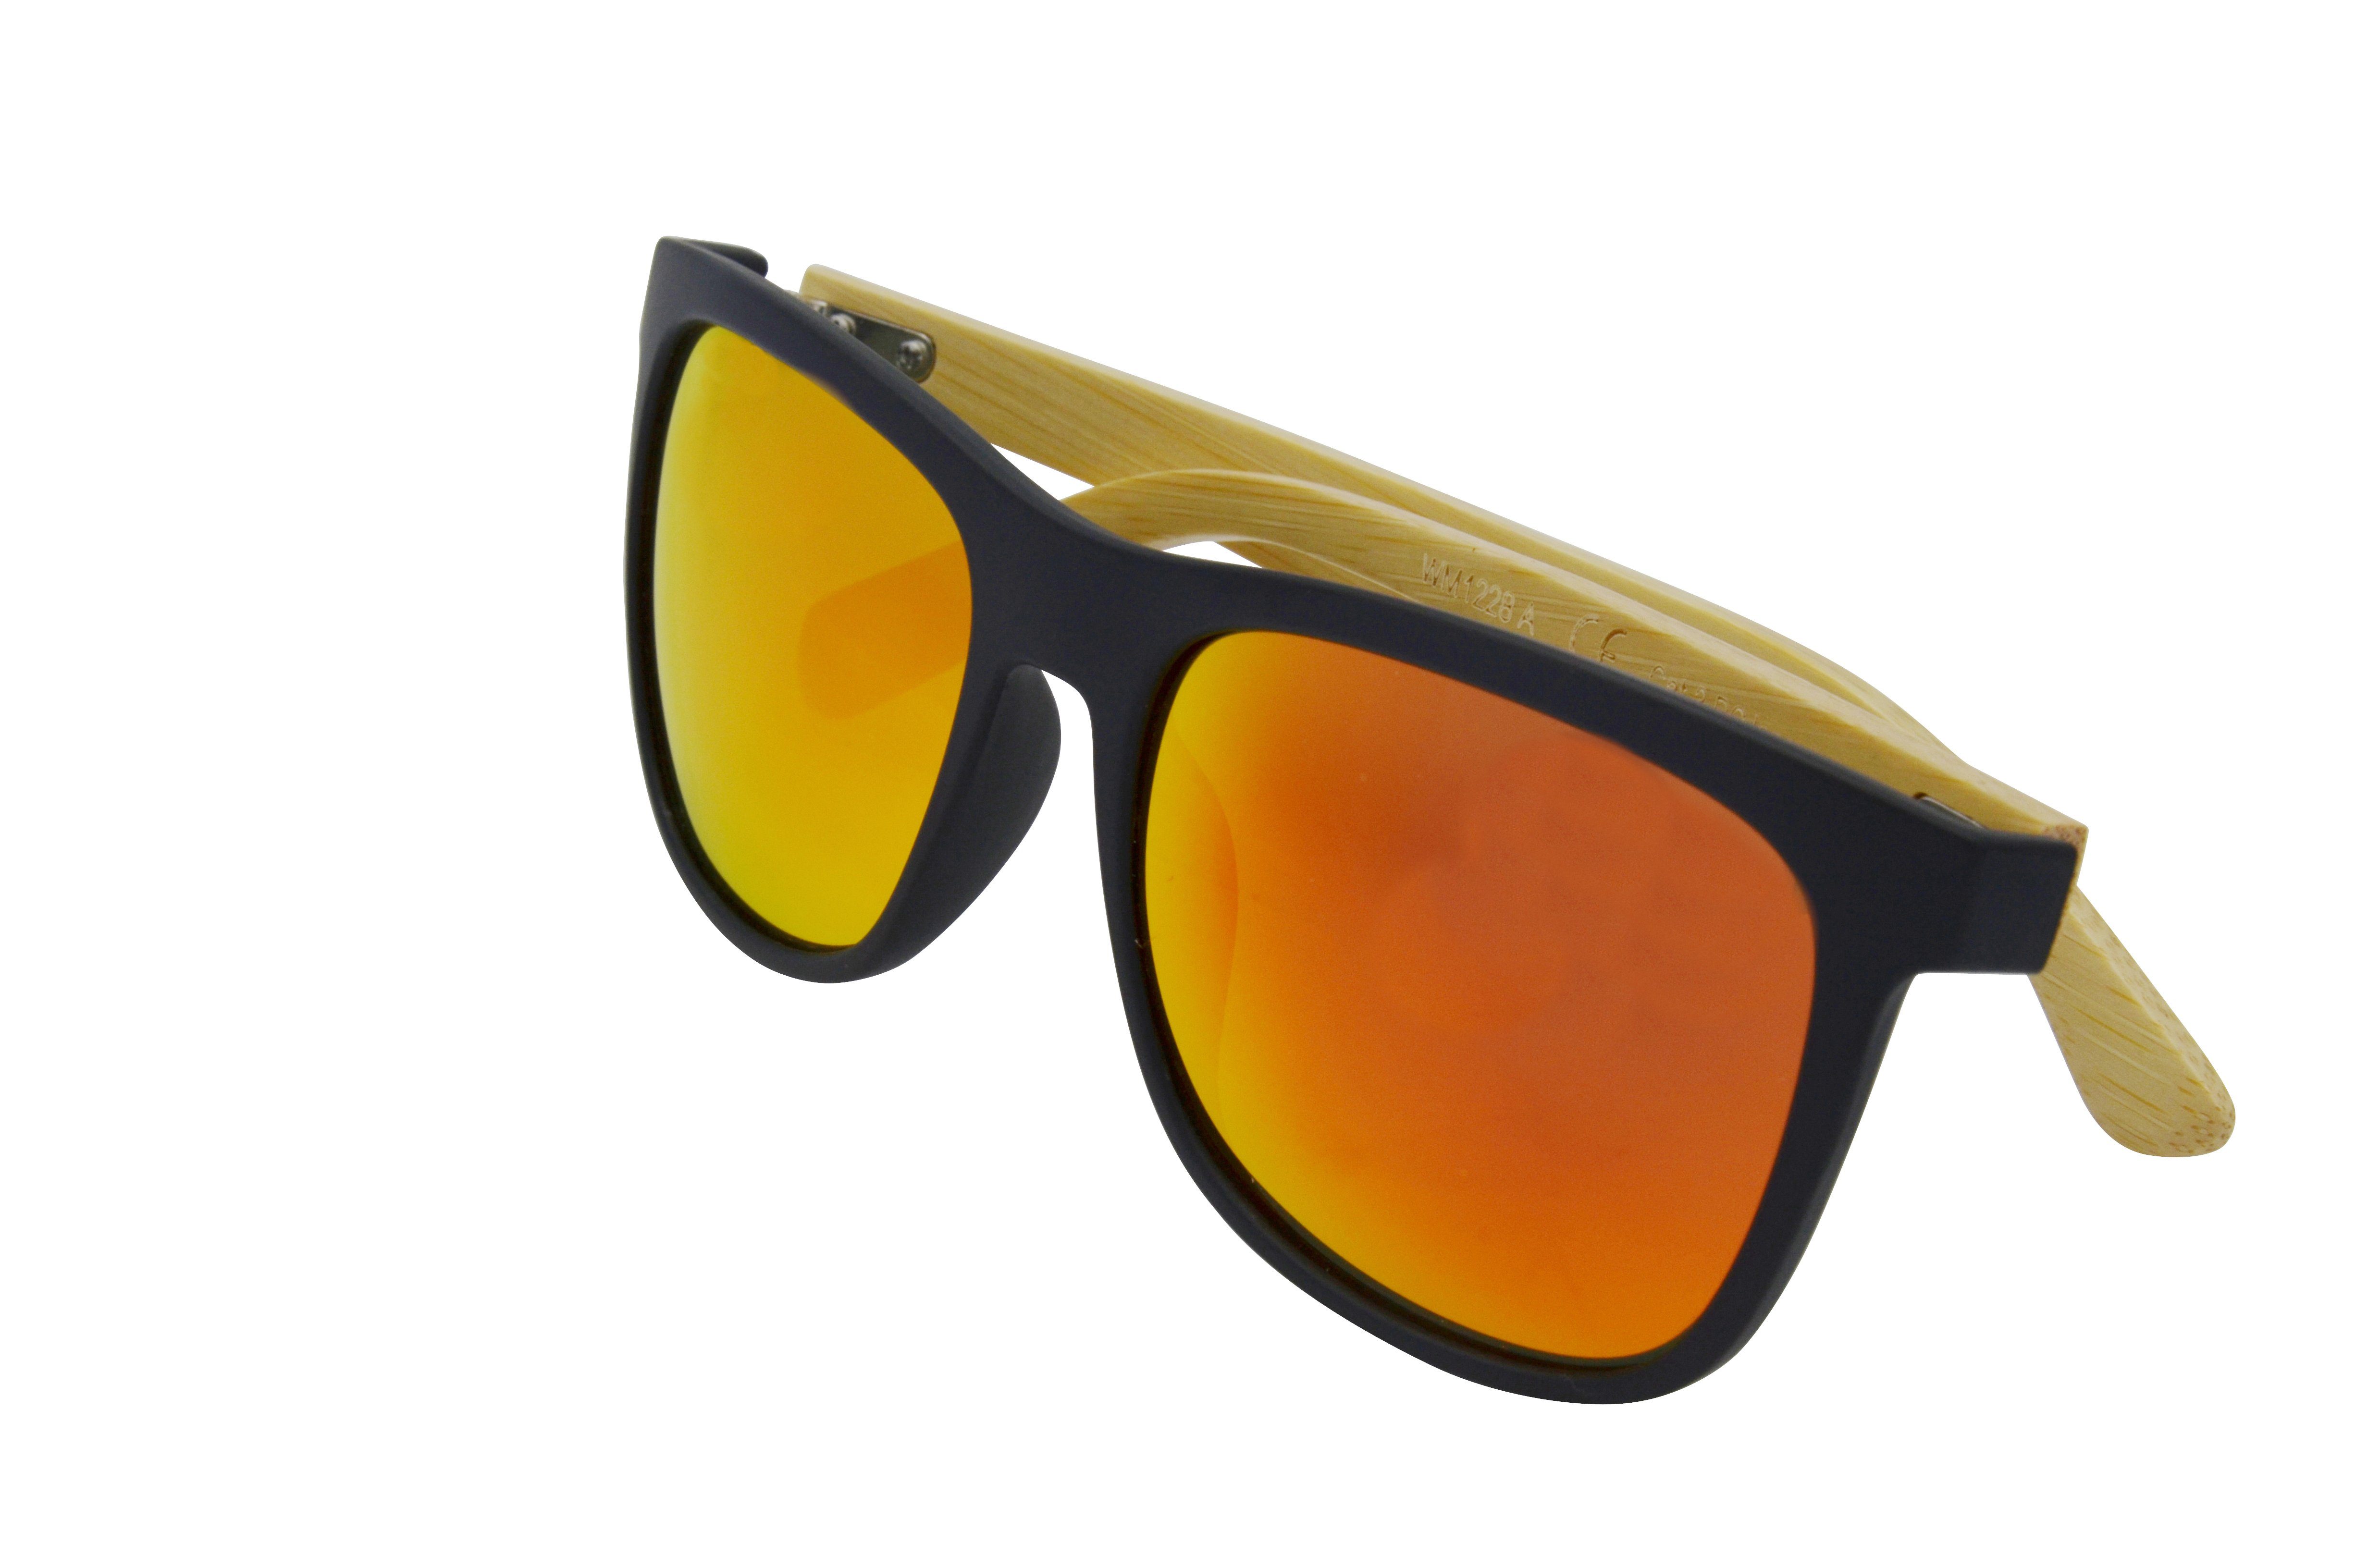 GAMSSTYLE - Gamswild Sonnenbrille Mode Unisex rot, Damen Brille Herren WM1028 grün Bambusholz, grün getönt orange, gelb,